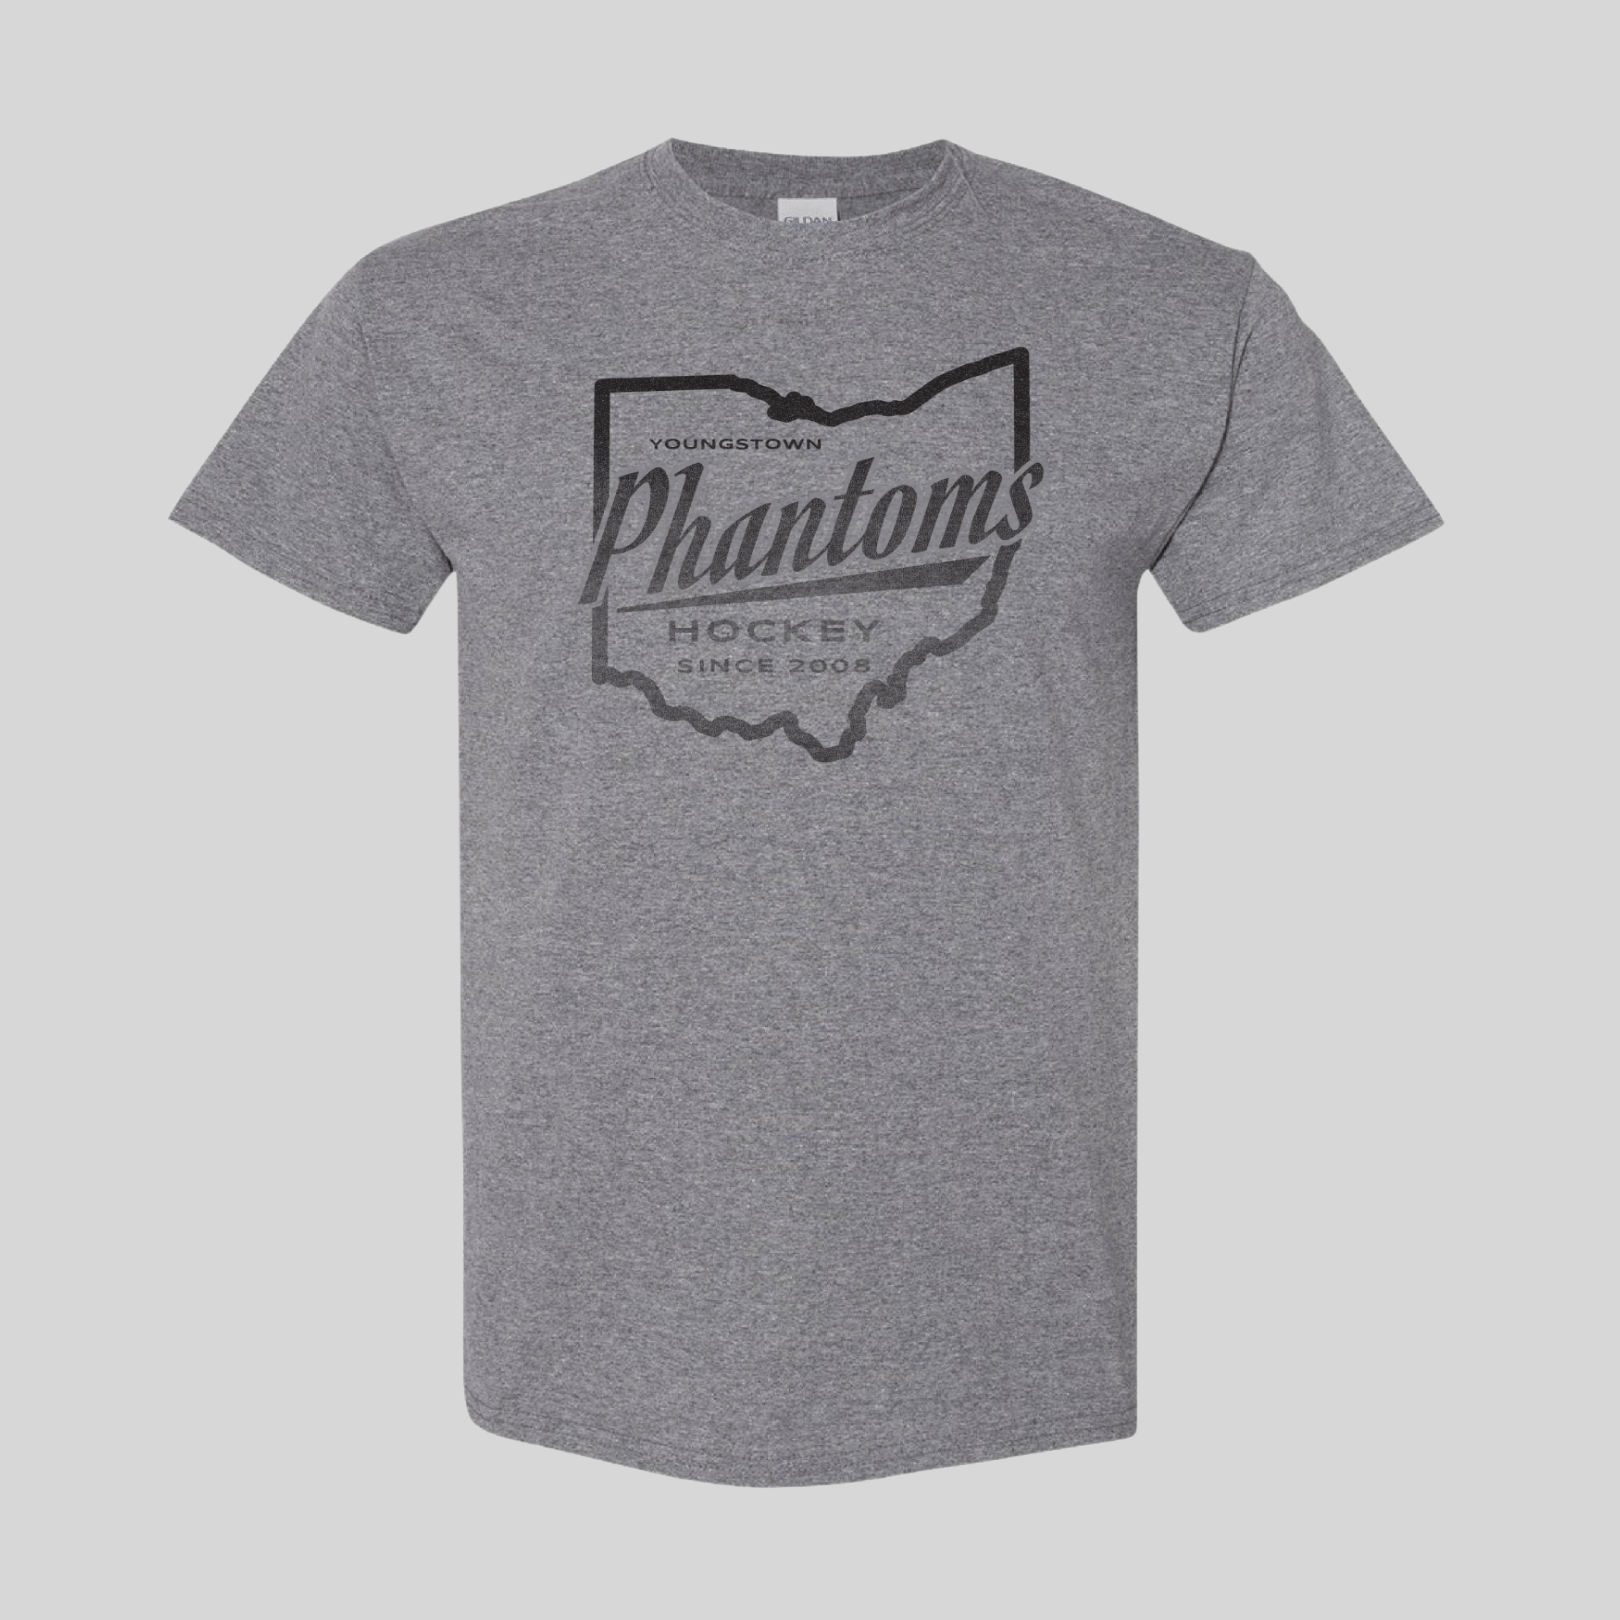 Youngstown Phantoms XL jersey